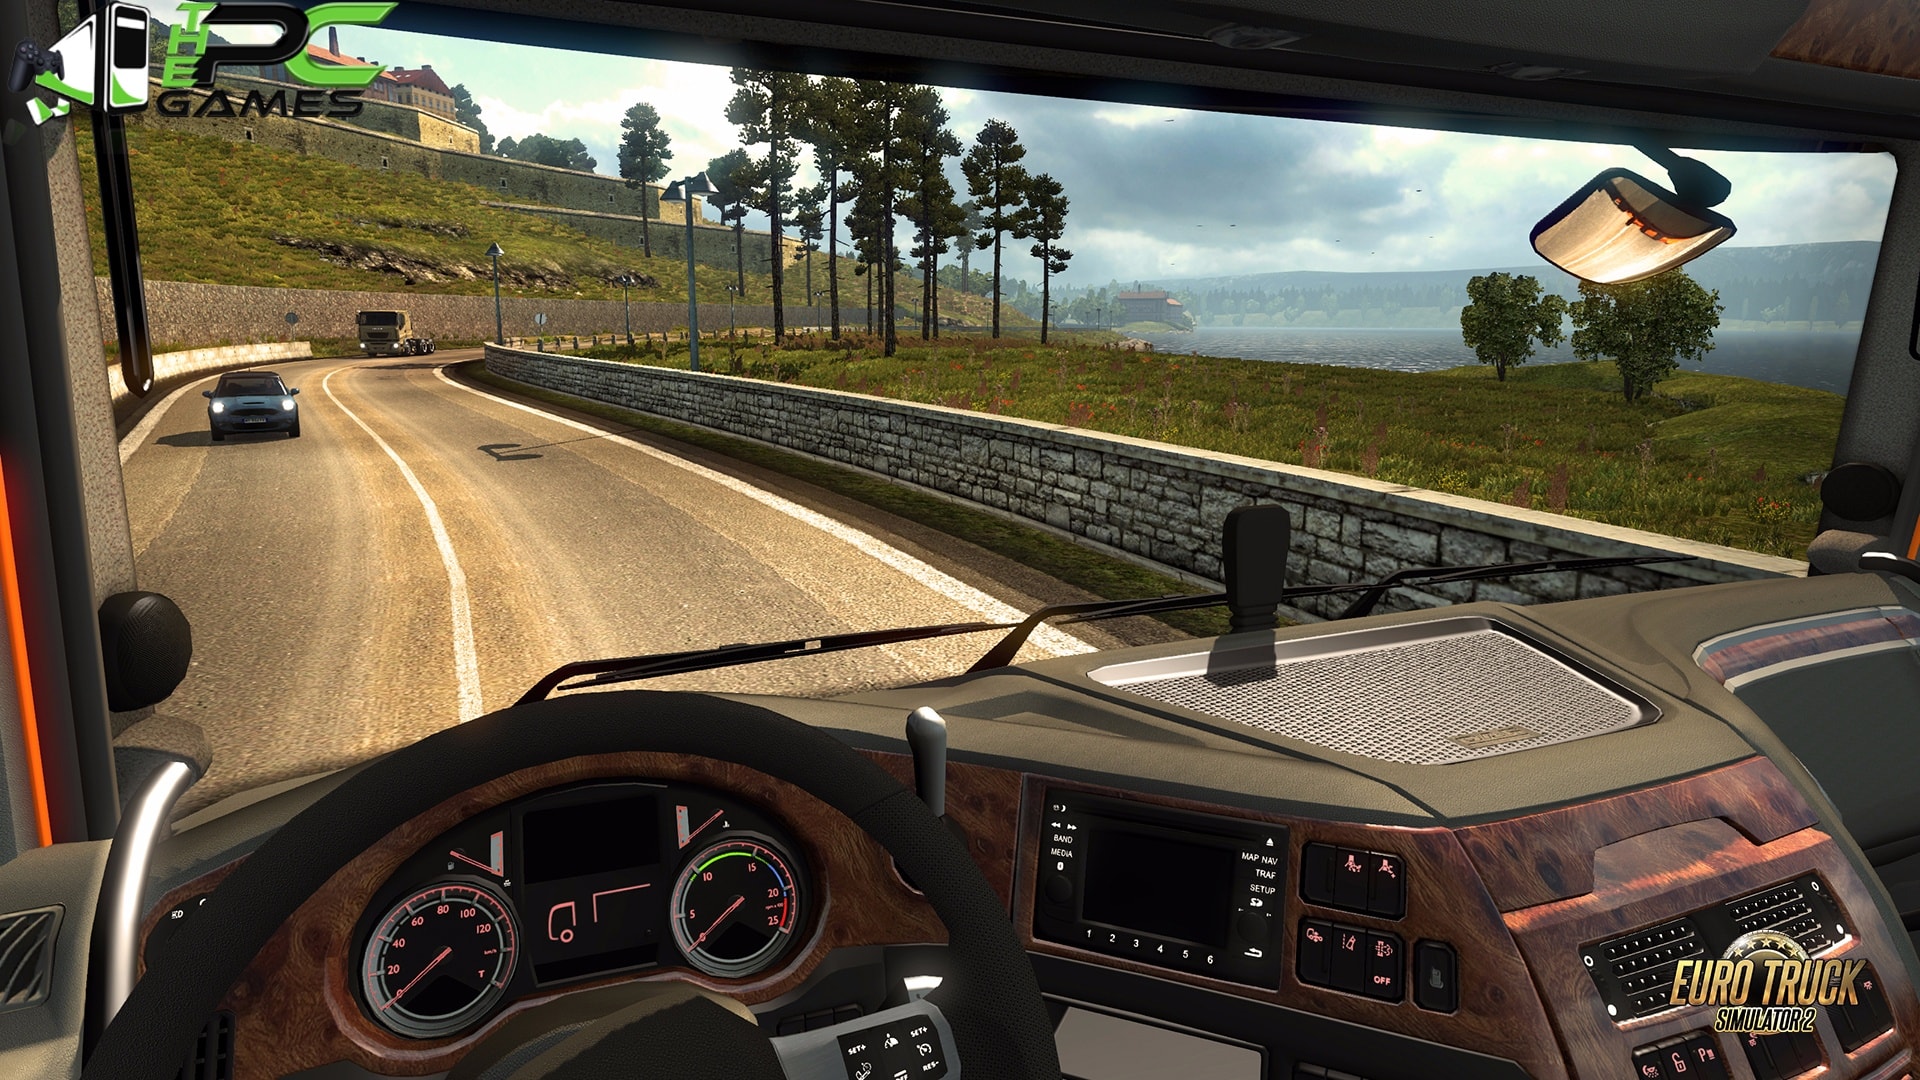 Euro truck simulator 2 demo free download pc